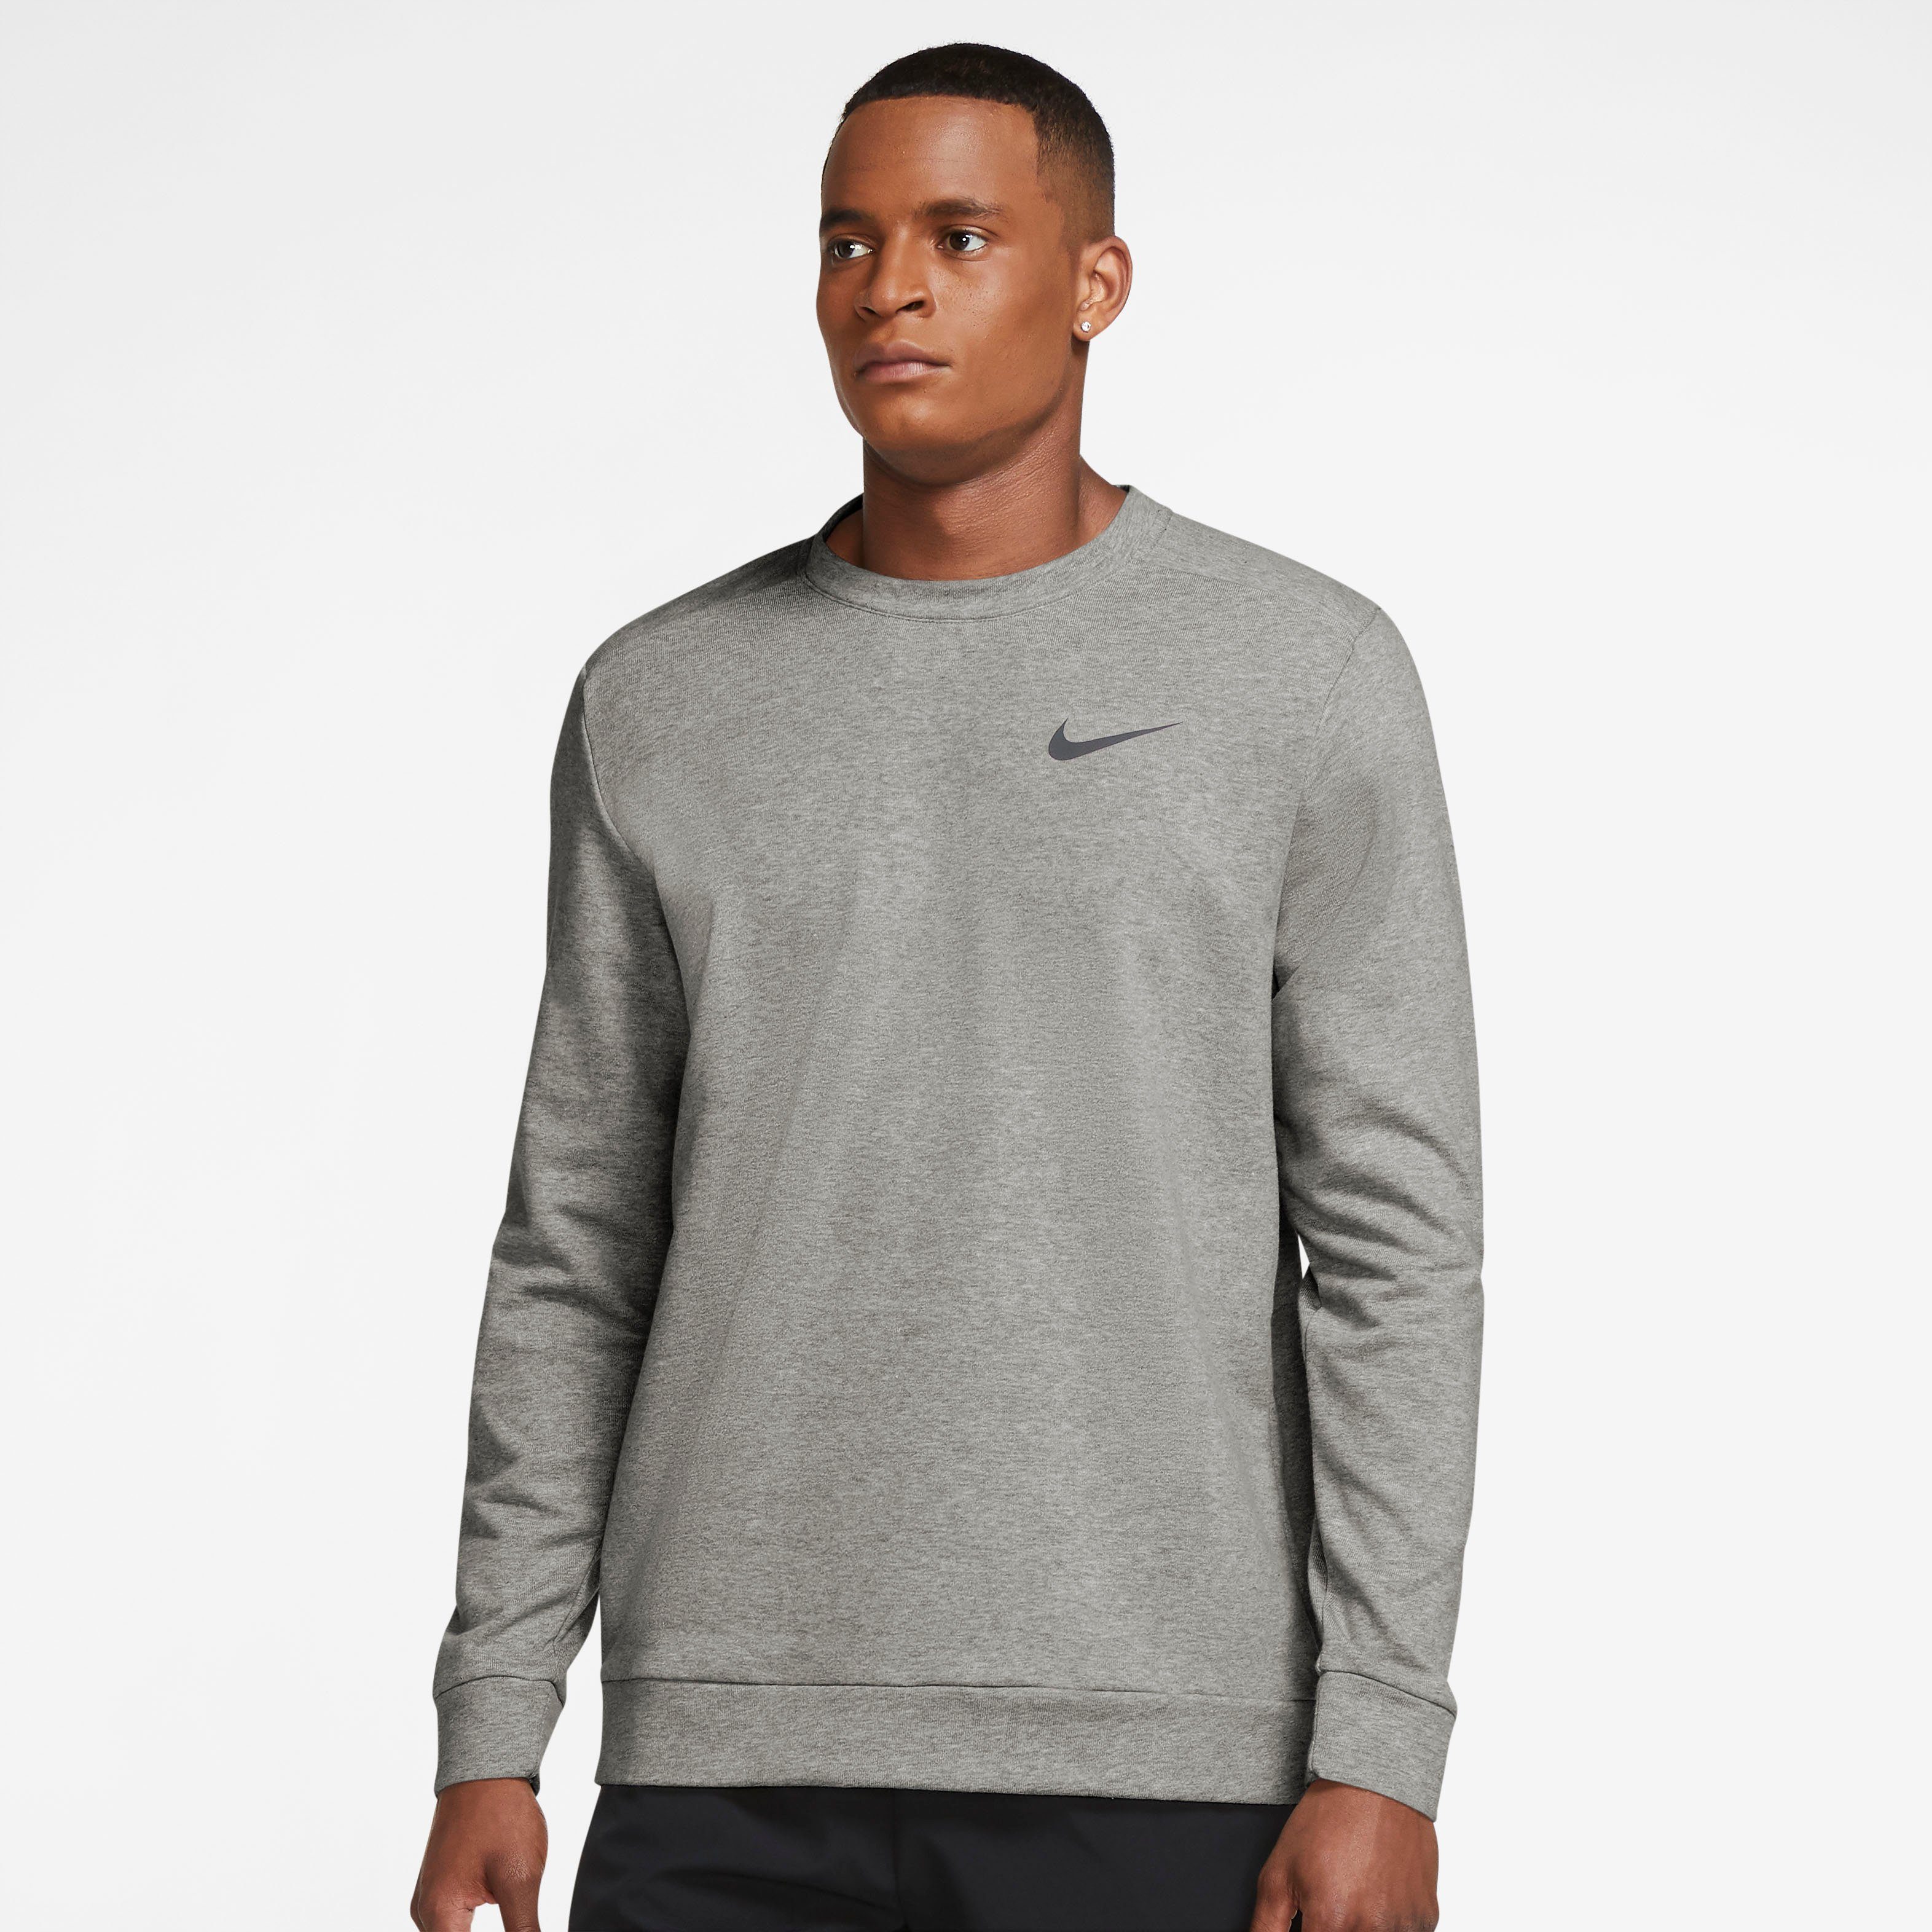 Nike Funktionsshirts online kaufen | OTTO